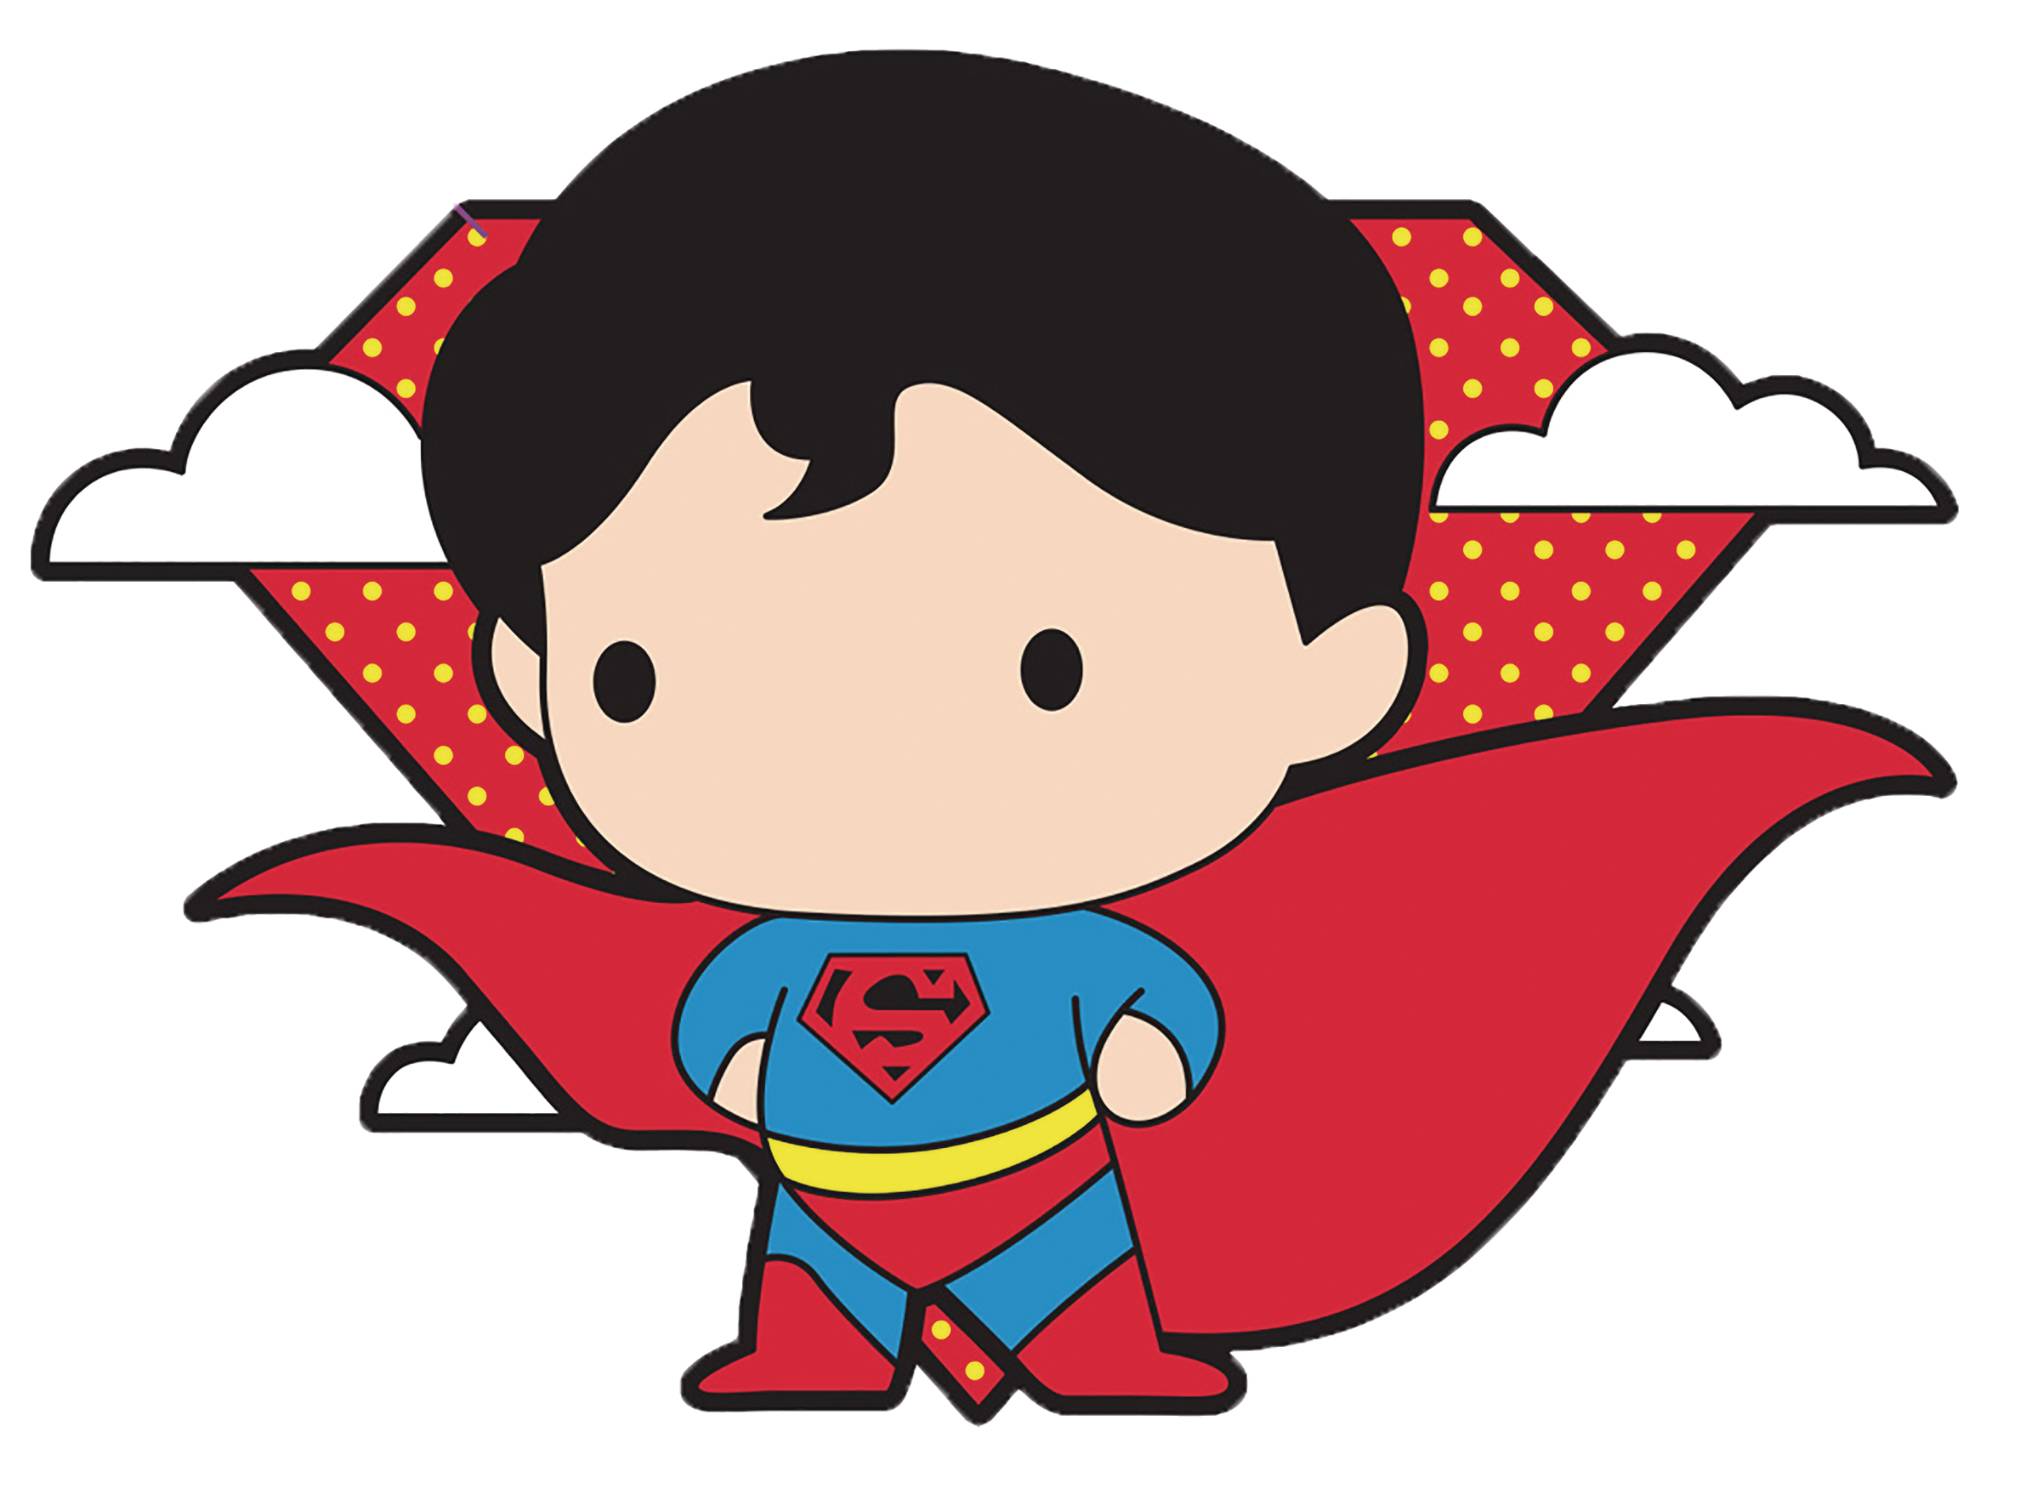 DC Chibi Superman Pin